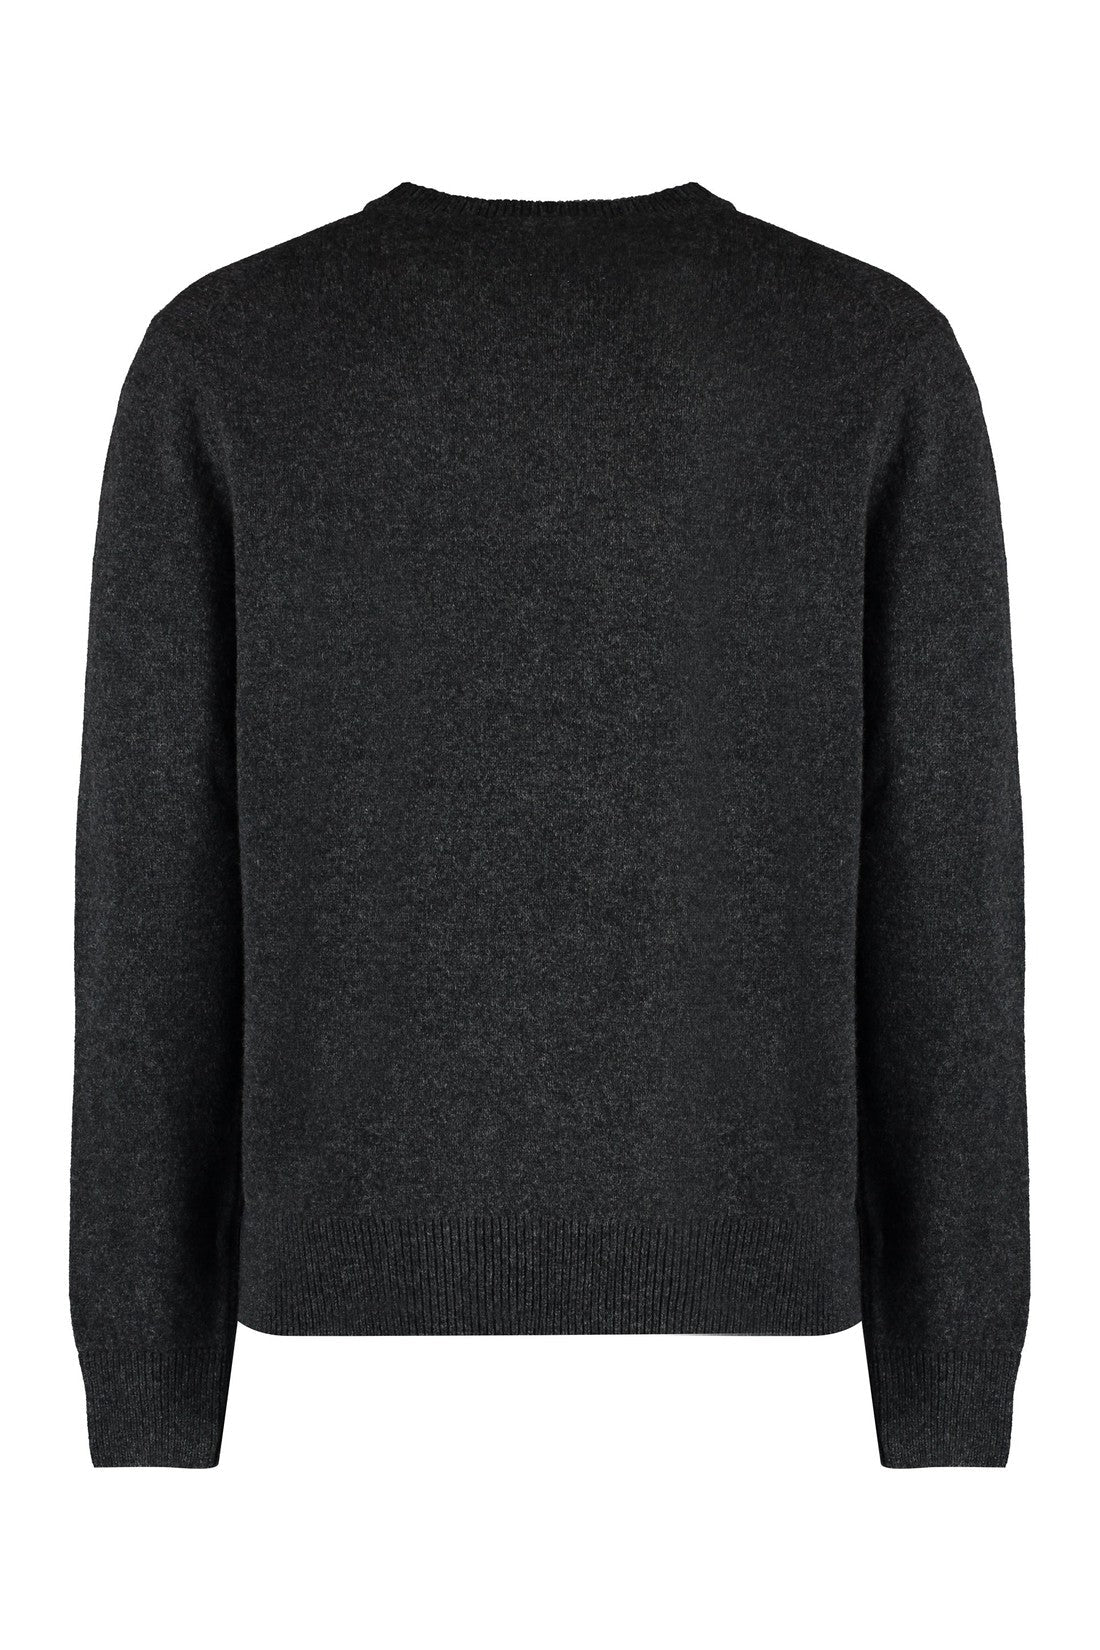 Maison Kitsuné-OUTLET-SALE-Crew-neck wool sweater-ARCHIVIST